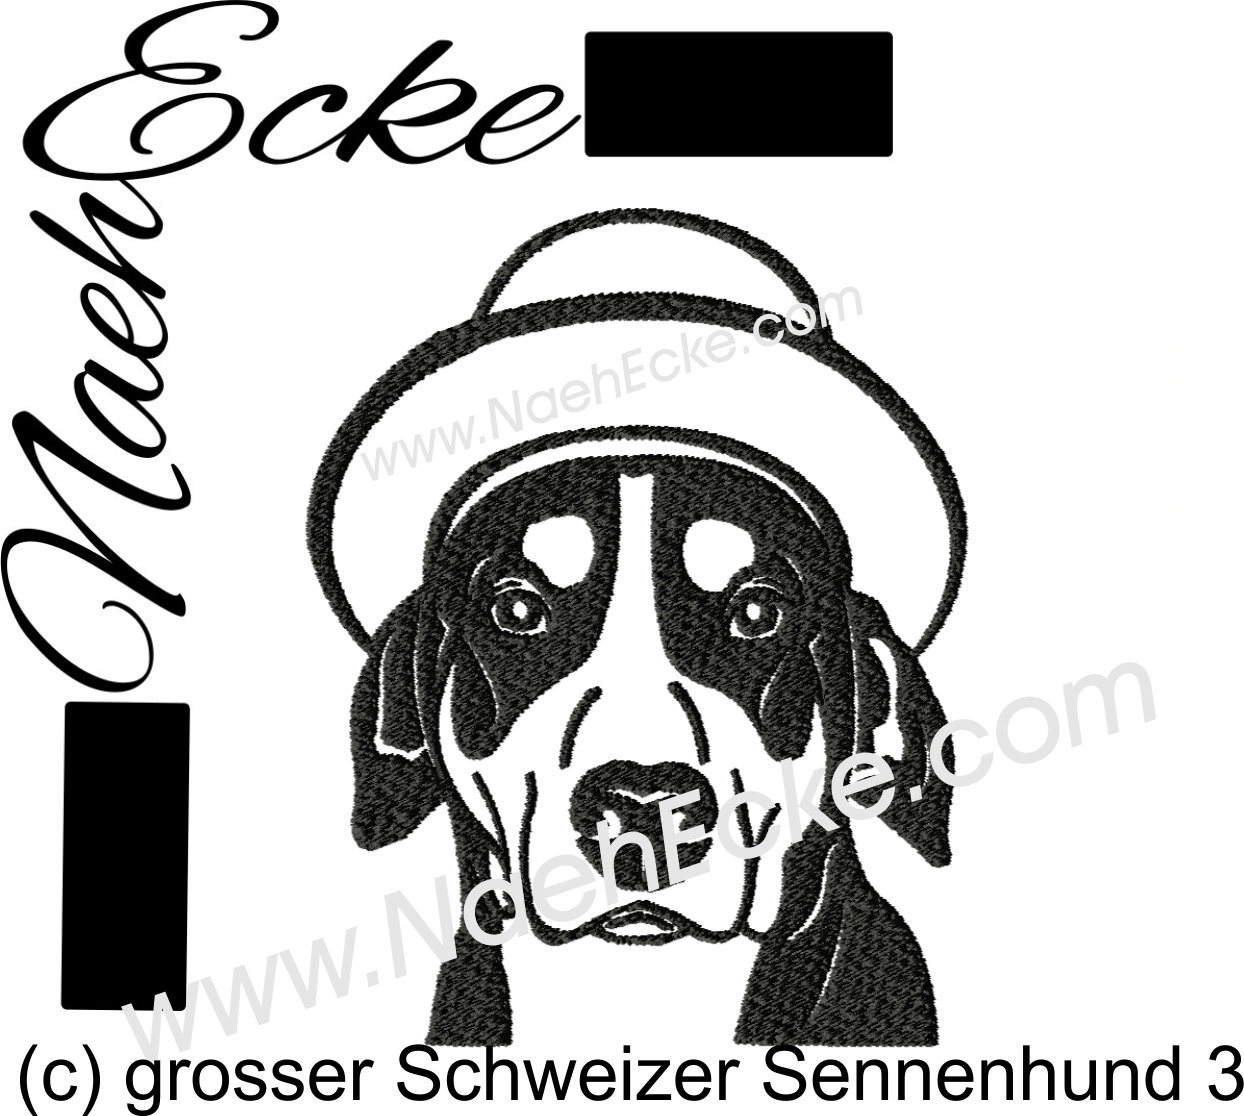 Großer Schweizer Sennenhund 3